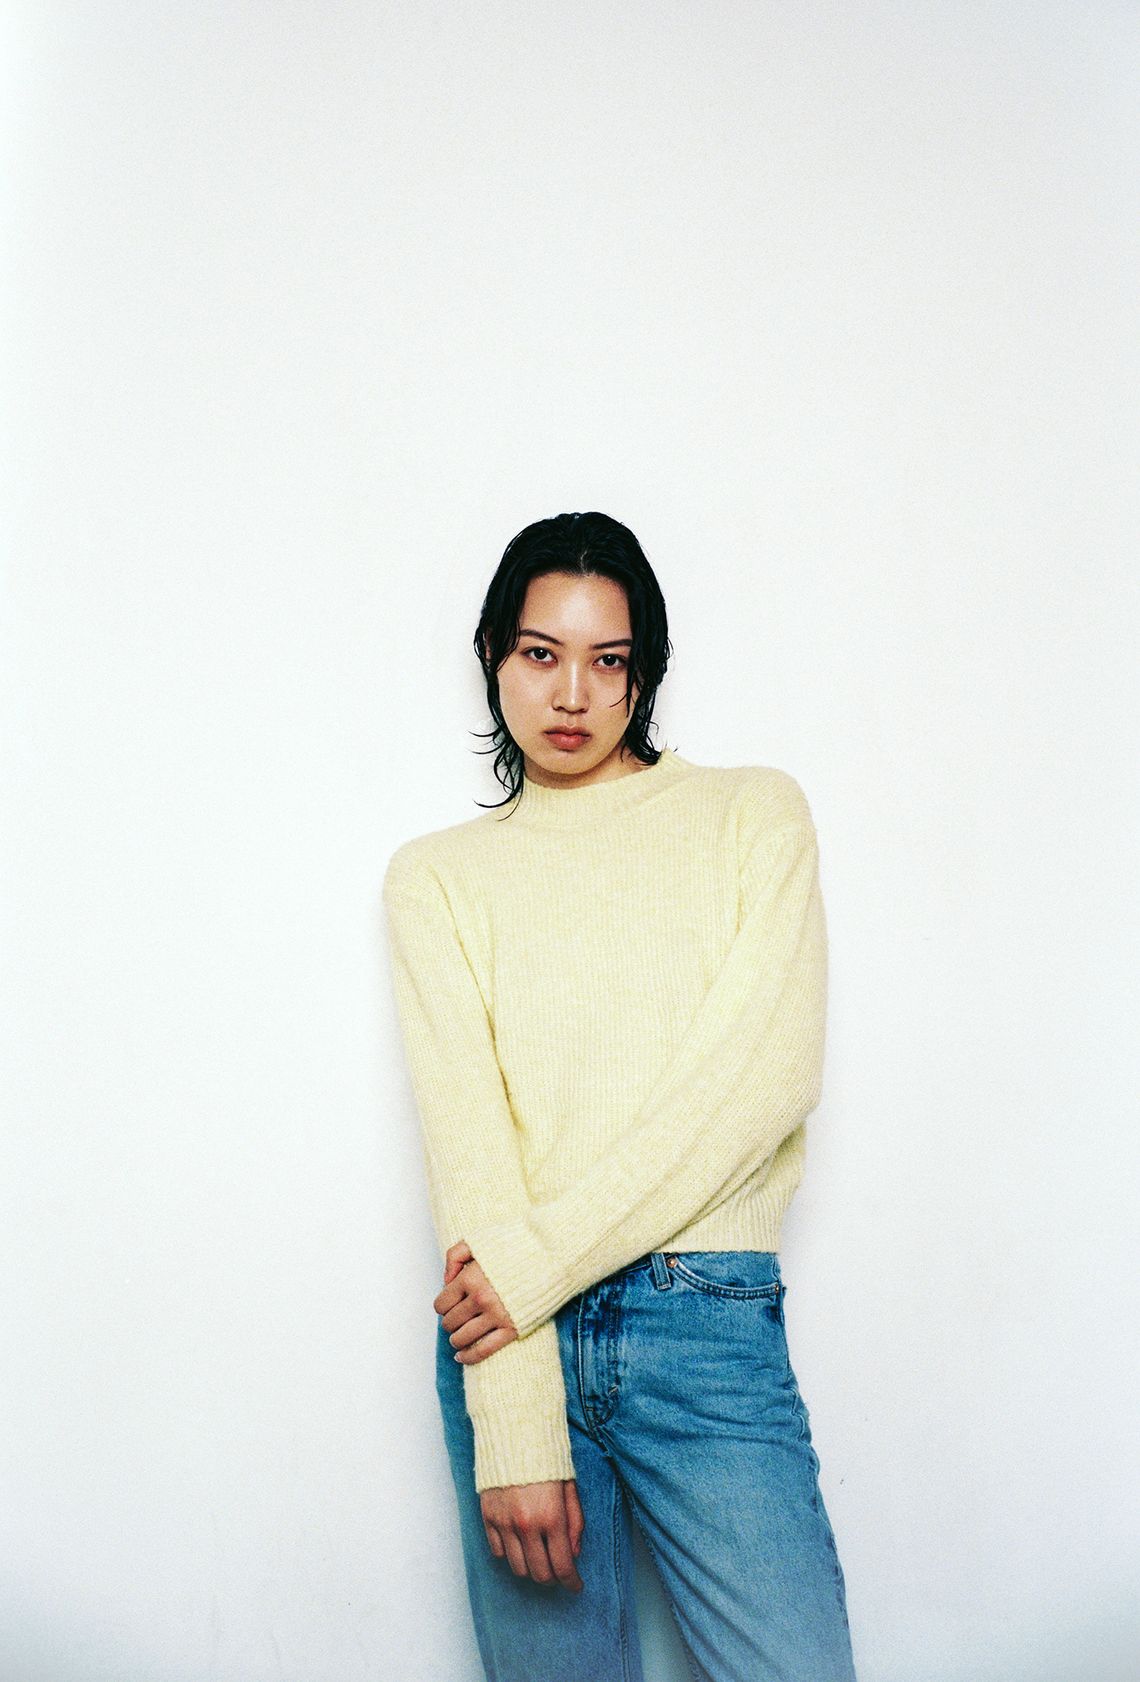 Jenn Xu